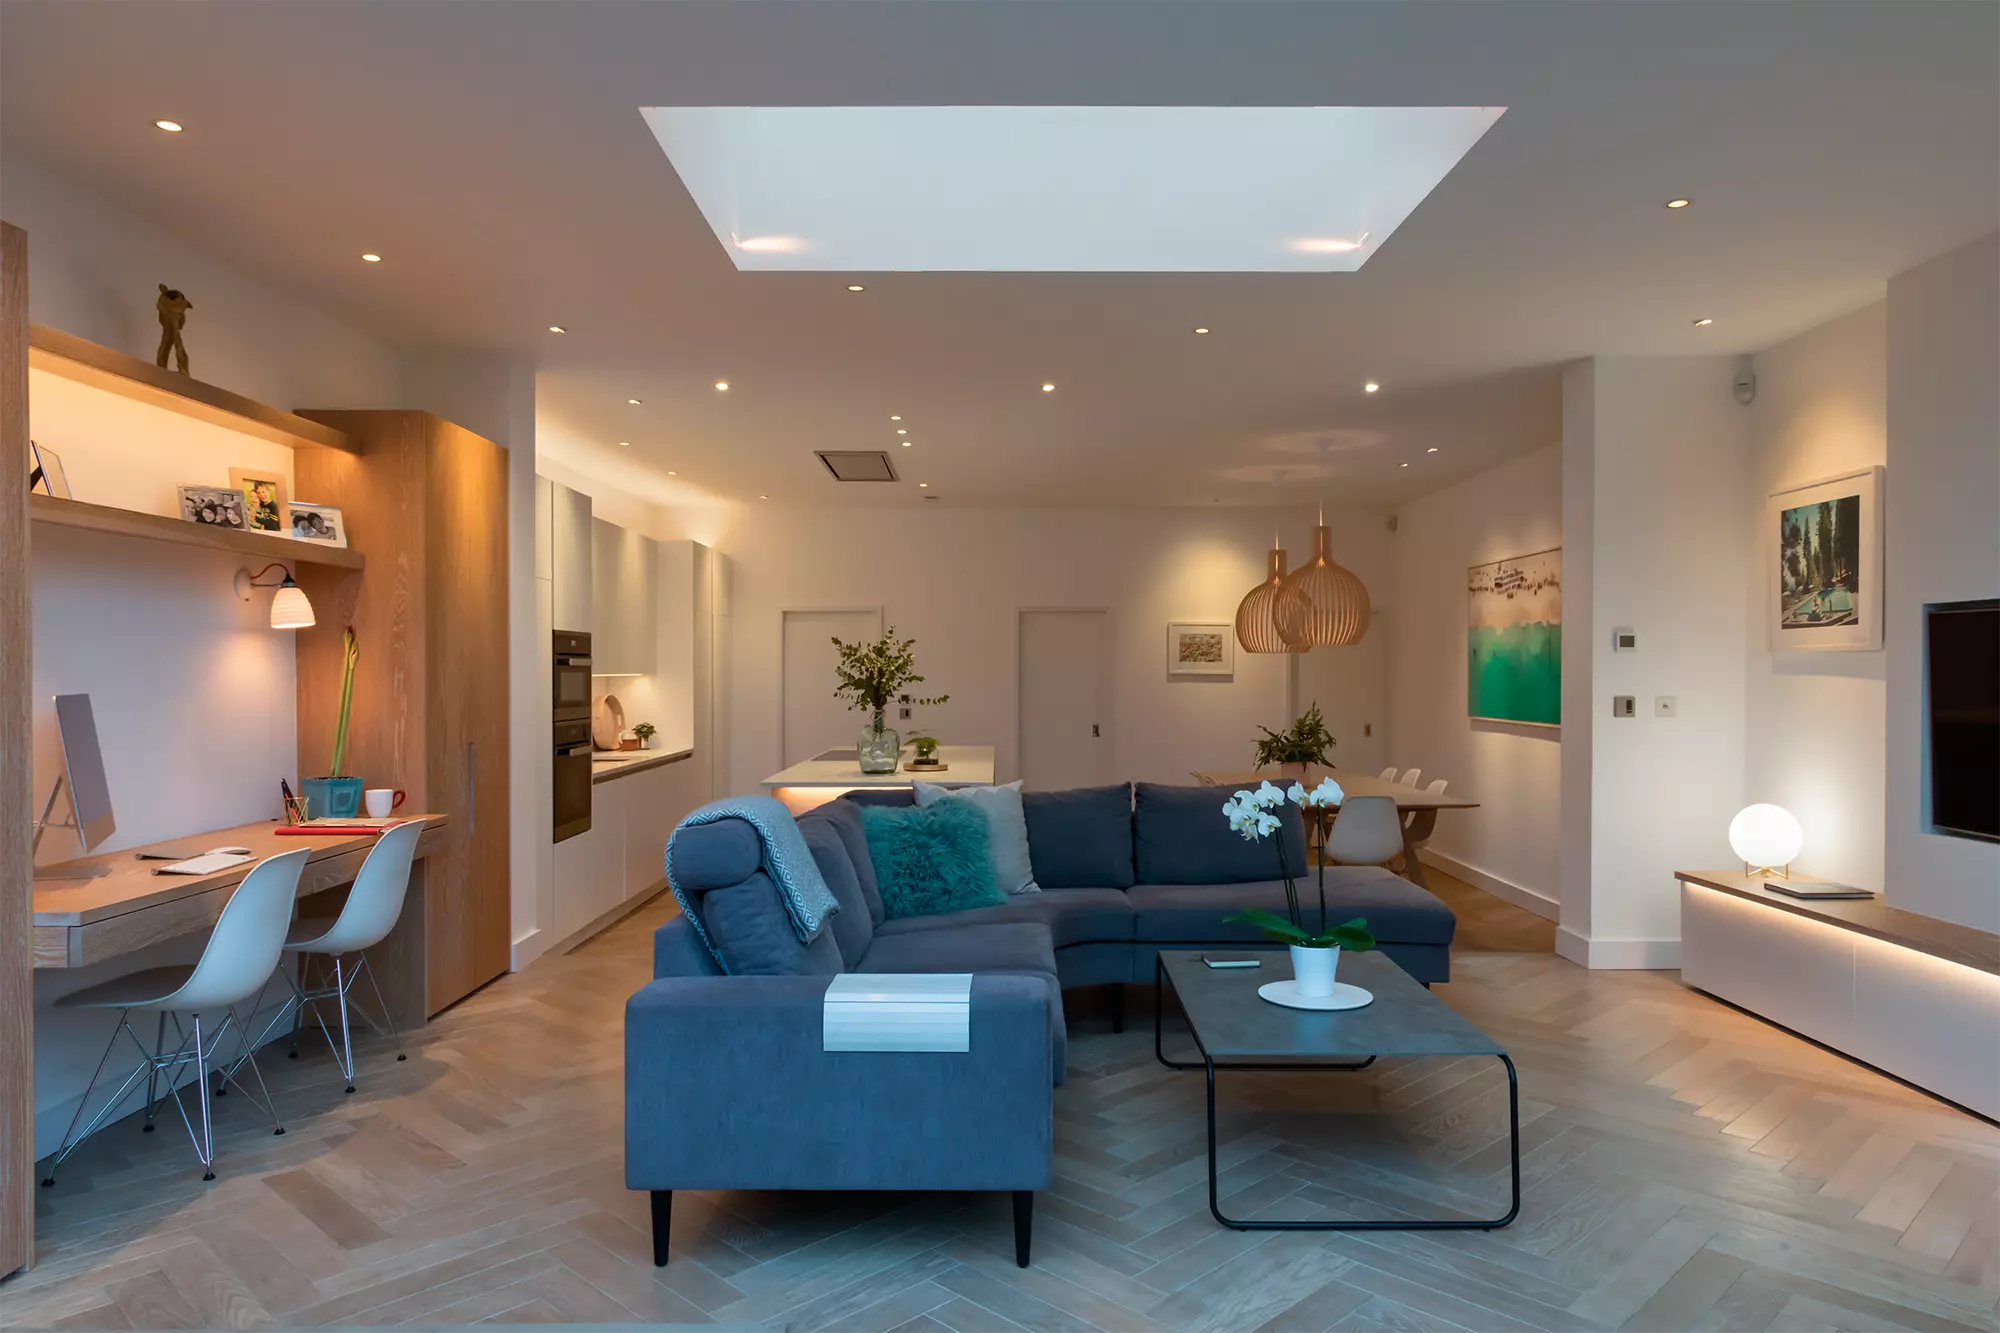 Una sala de estar moderna y bien iluminada con múltiples fuentes de iluminación, incluidas luces empotradas en el techo y un gran tragaluz.